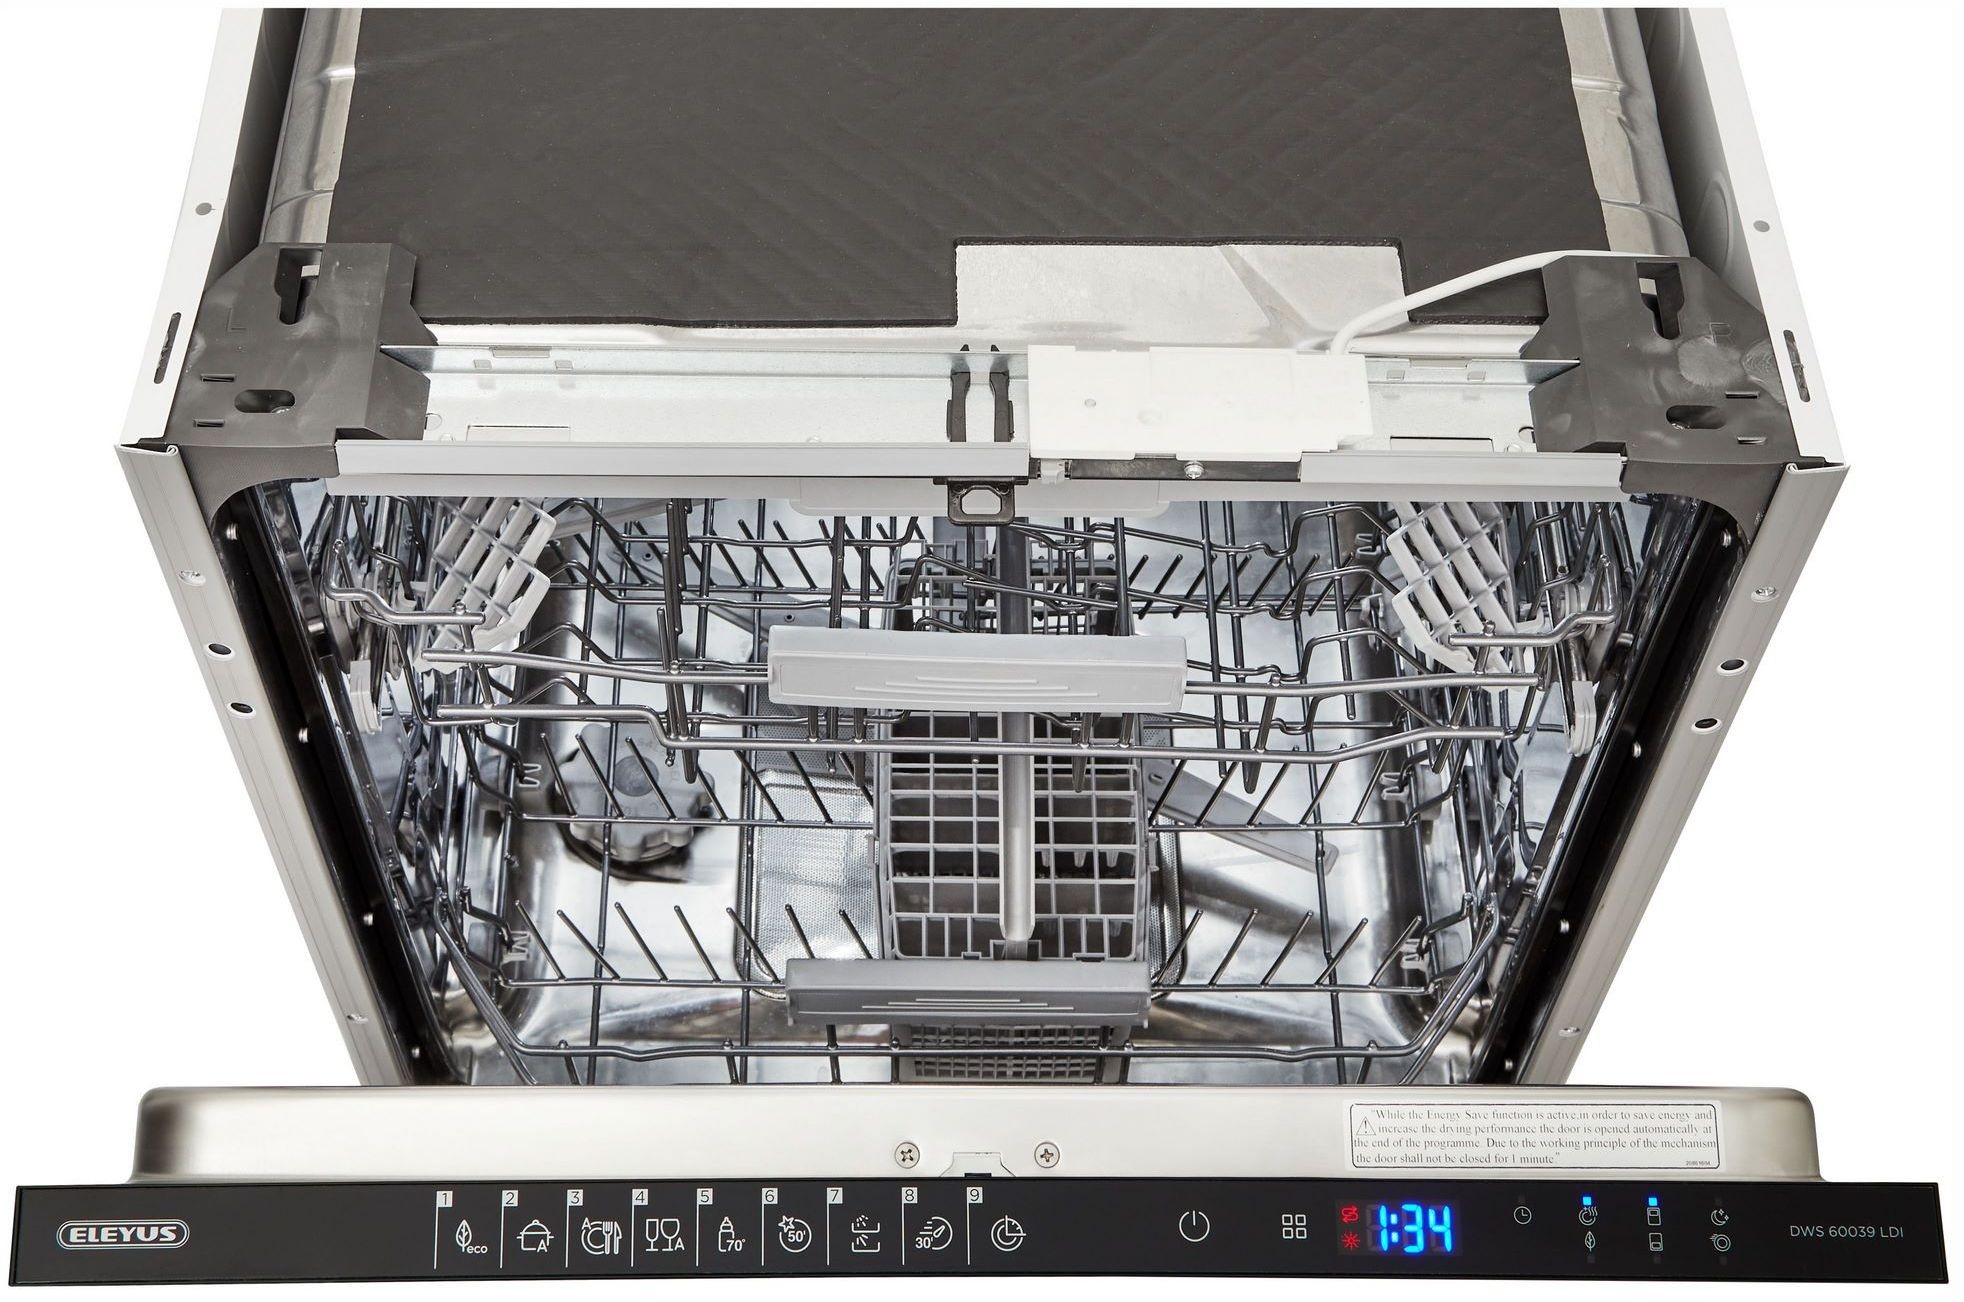 Посудомоечная машина Eleyus DWS 60039 LDI характеристики - фотография 7